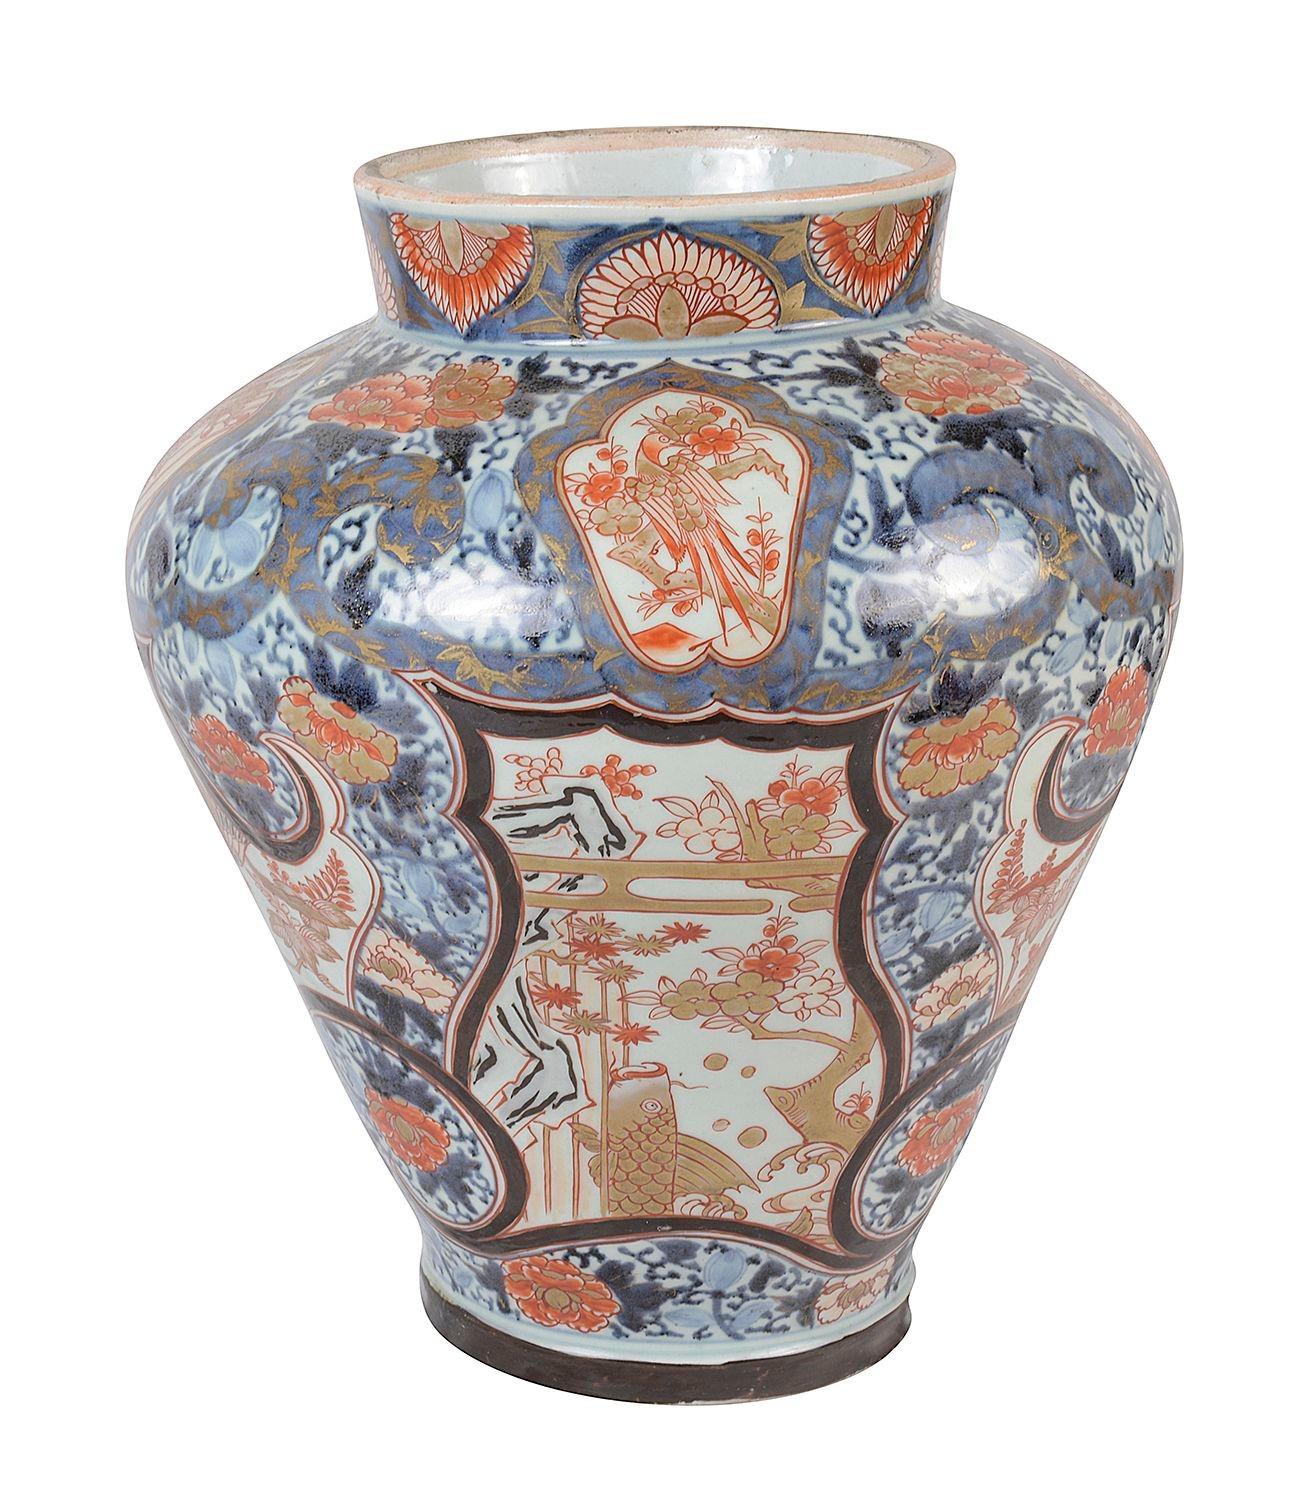 Un impressionnant et décoratif vase / lampe Arita Imari du 18ème siècle.
Elle présente de magnifiques couleurs vives, un décor classique de motifs et de feuillages en volutes, ainsi que des panneaux peints à la main représentant un oiseau